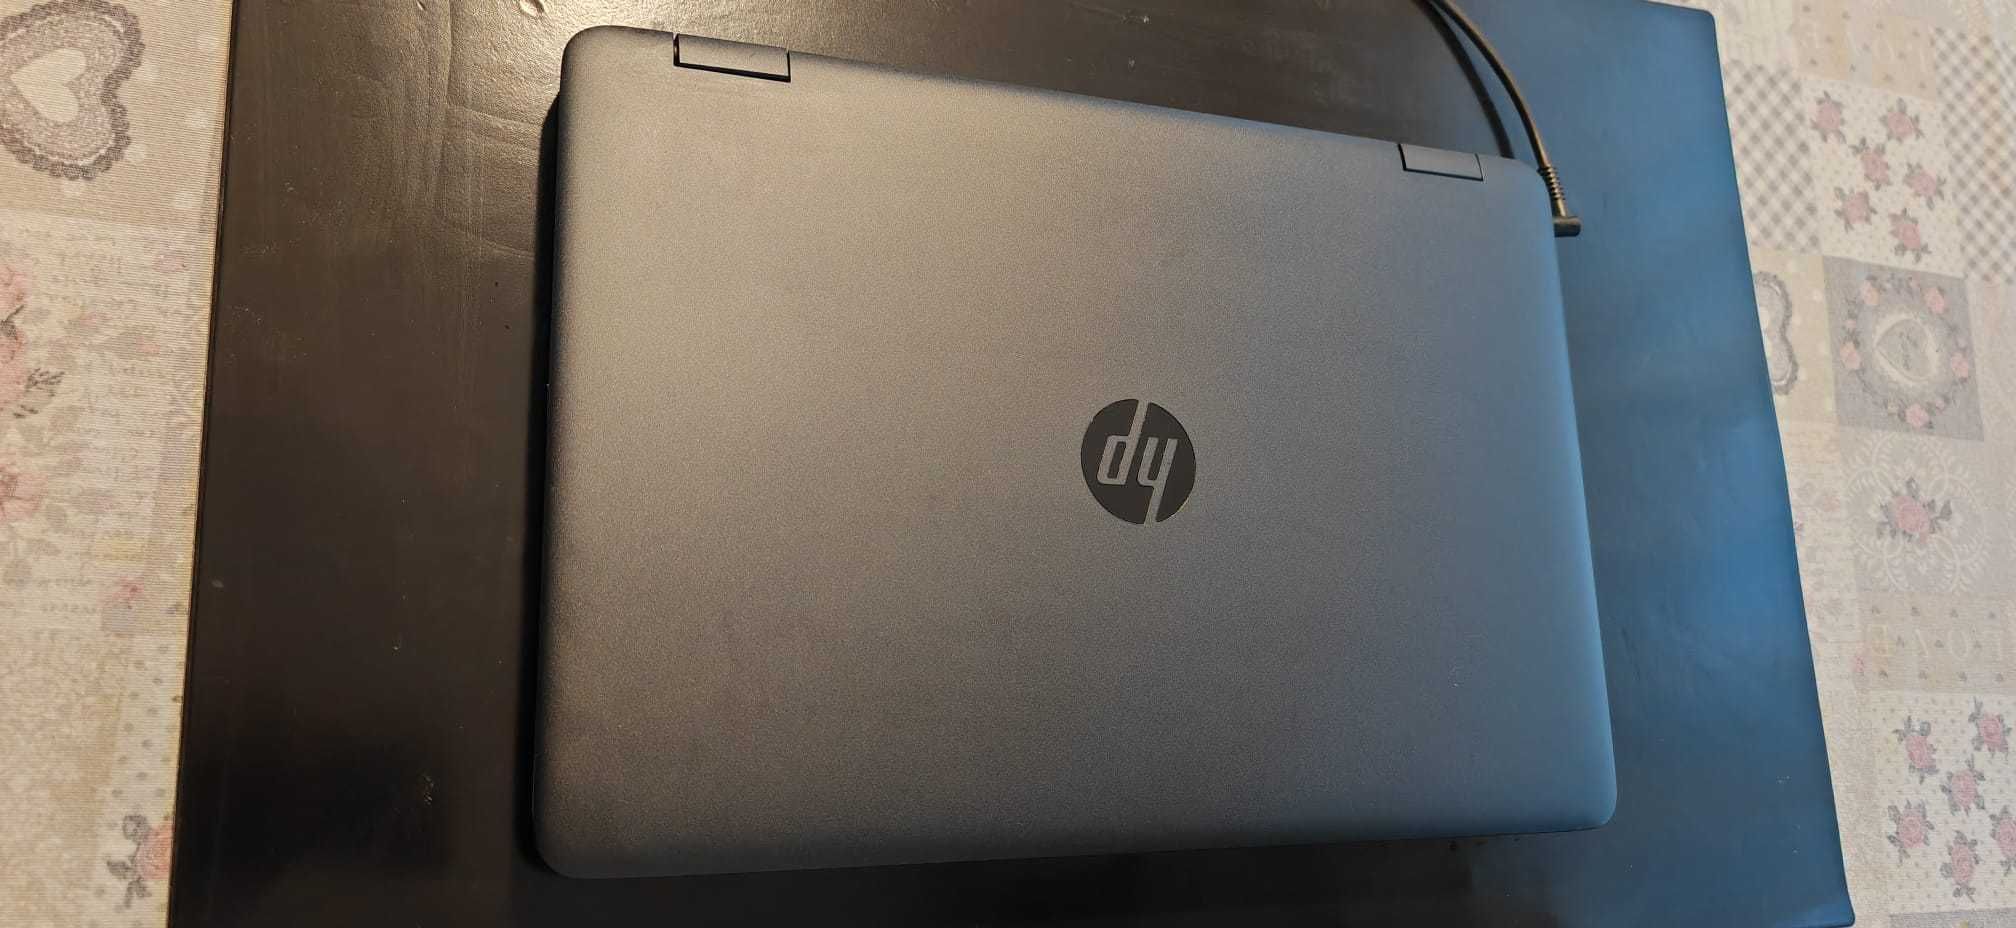 Laptop HP ProBook 650 G3 cu procesor Intel® Core™ i5-7200U 2.50 GHz